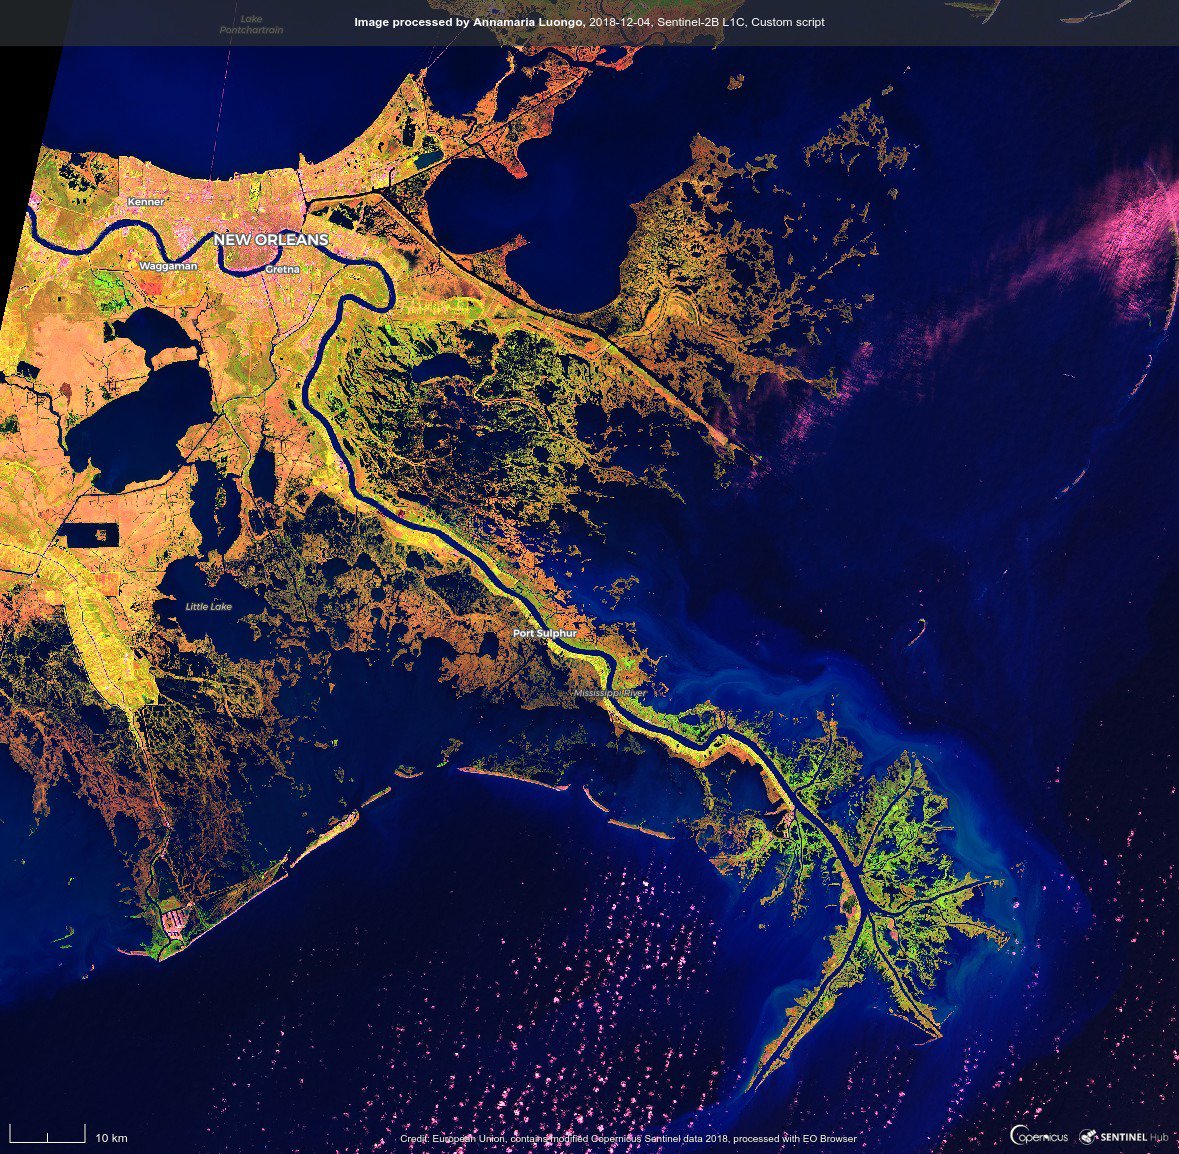 #Mississippi #River Delta & #NewOrleans in false-color. #Sentinel2 image. 
#EarthAsArt